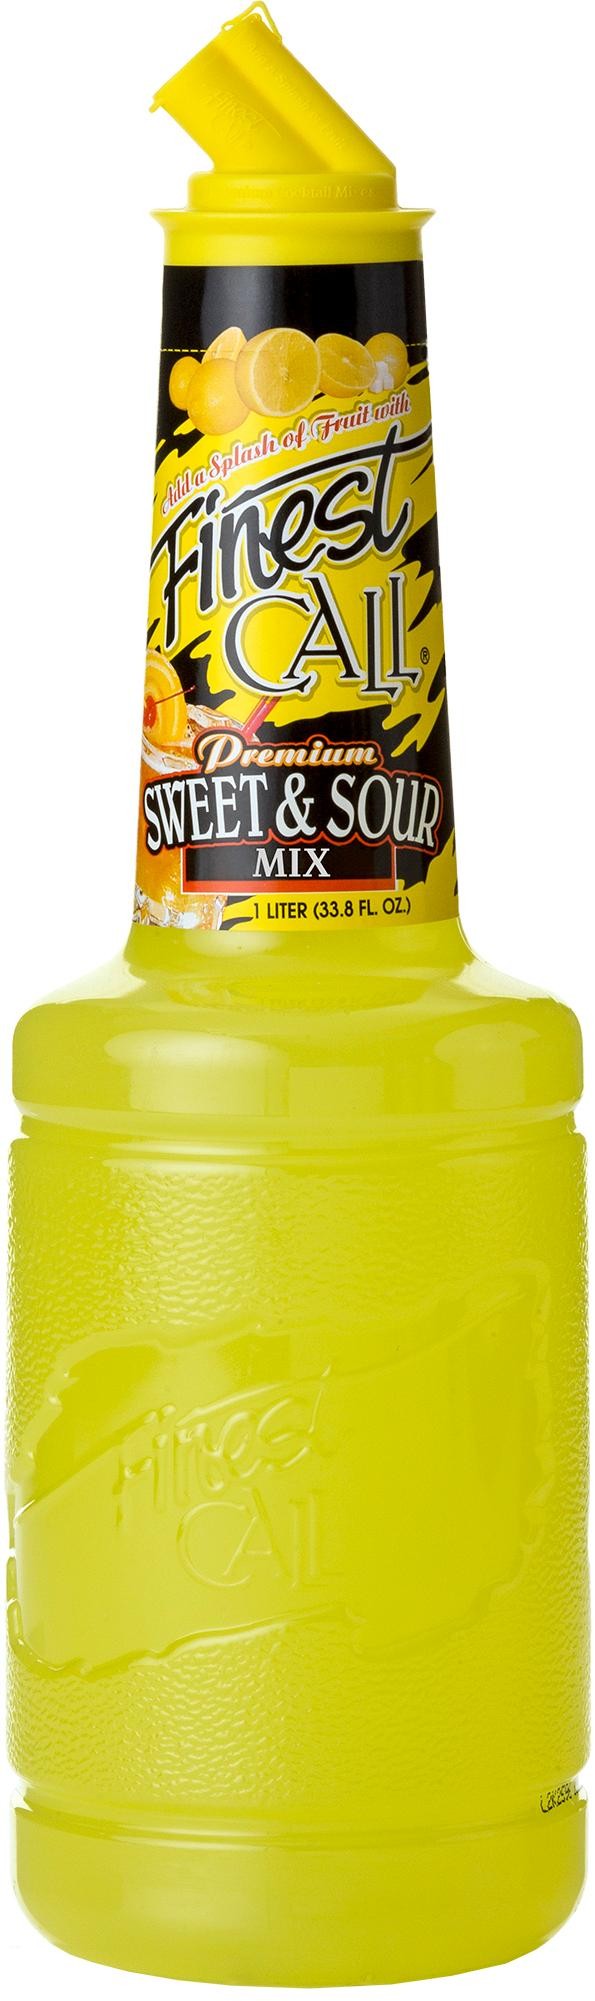 Finest Call Sweet & Sour Mix Liter 1L